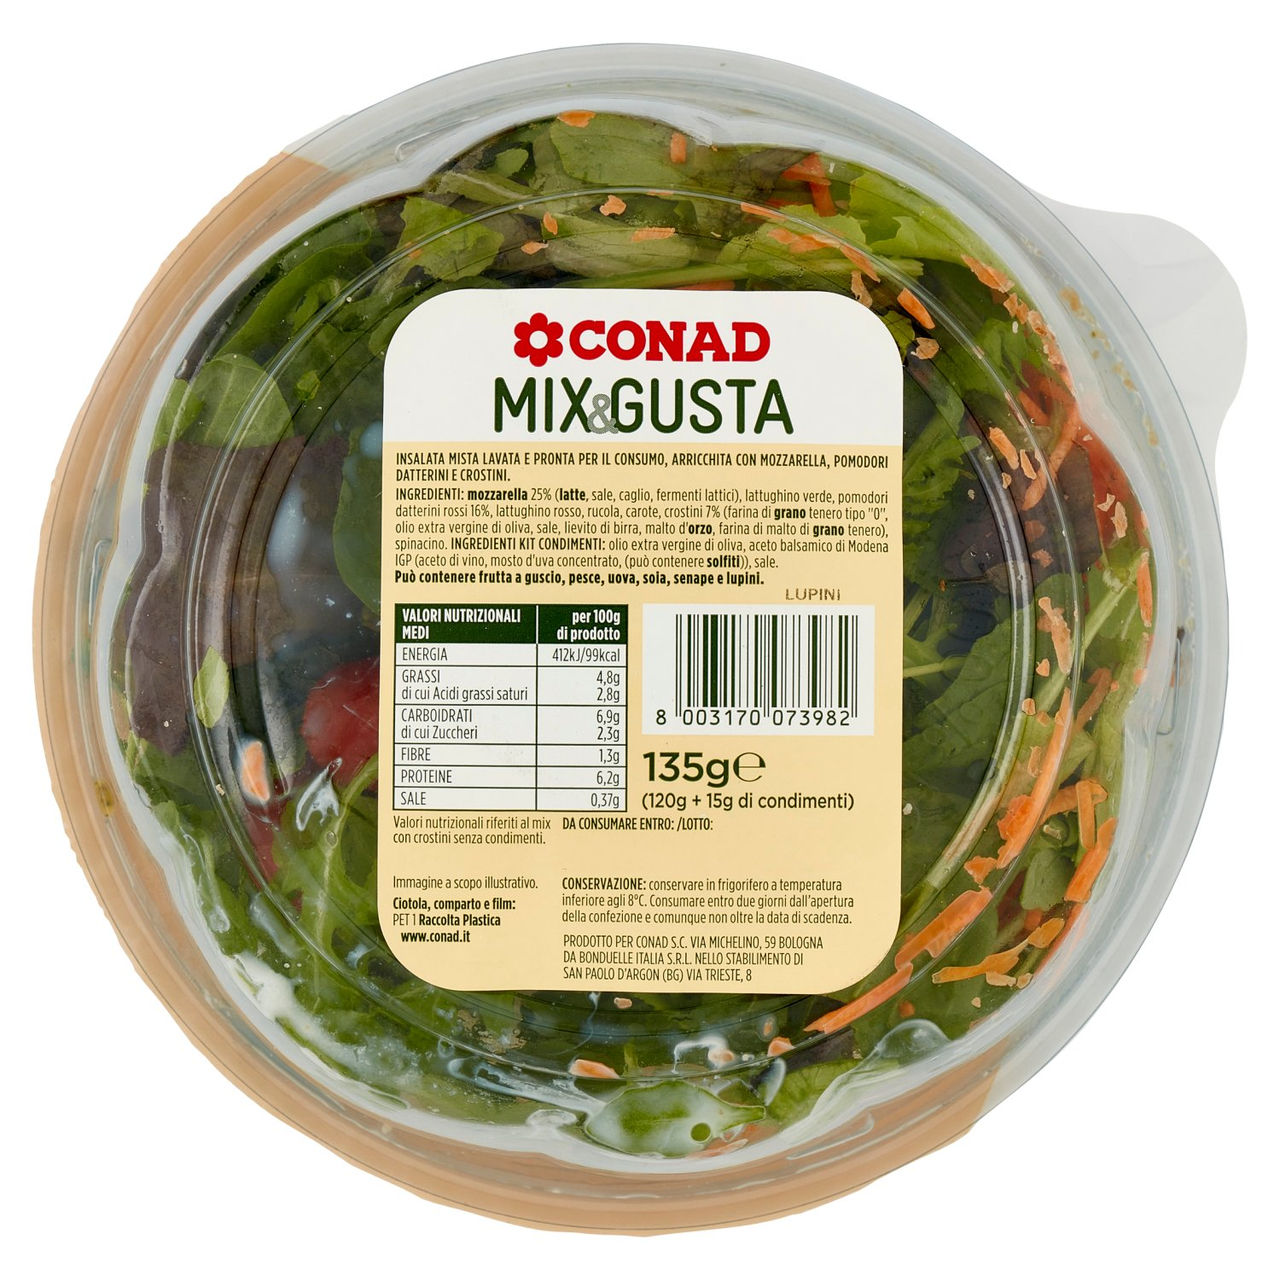 Mix & Gusta Mozzarella Conad in vendita online